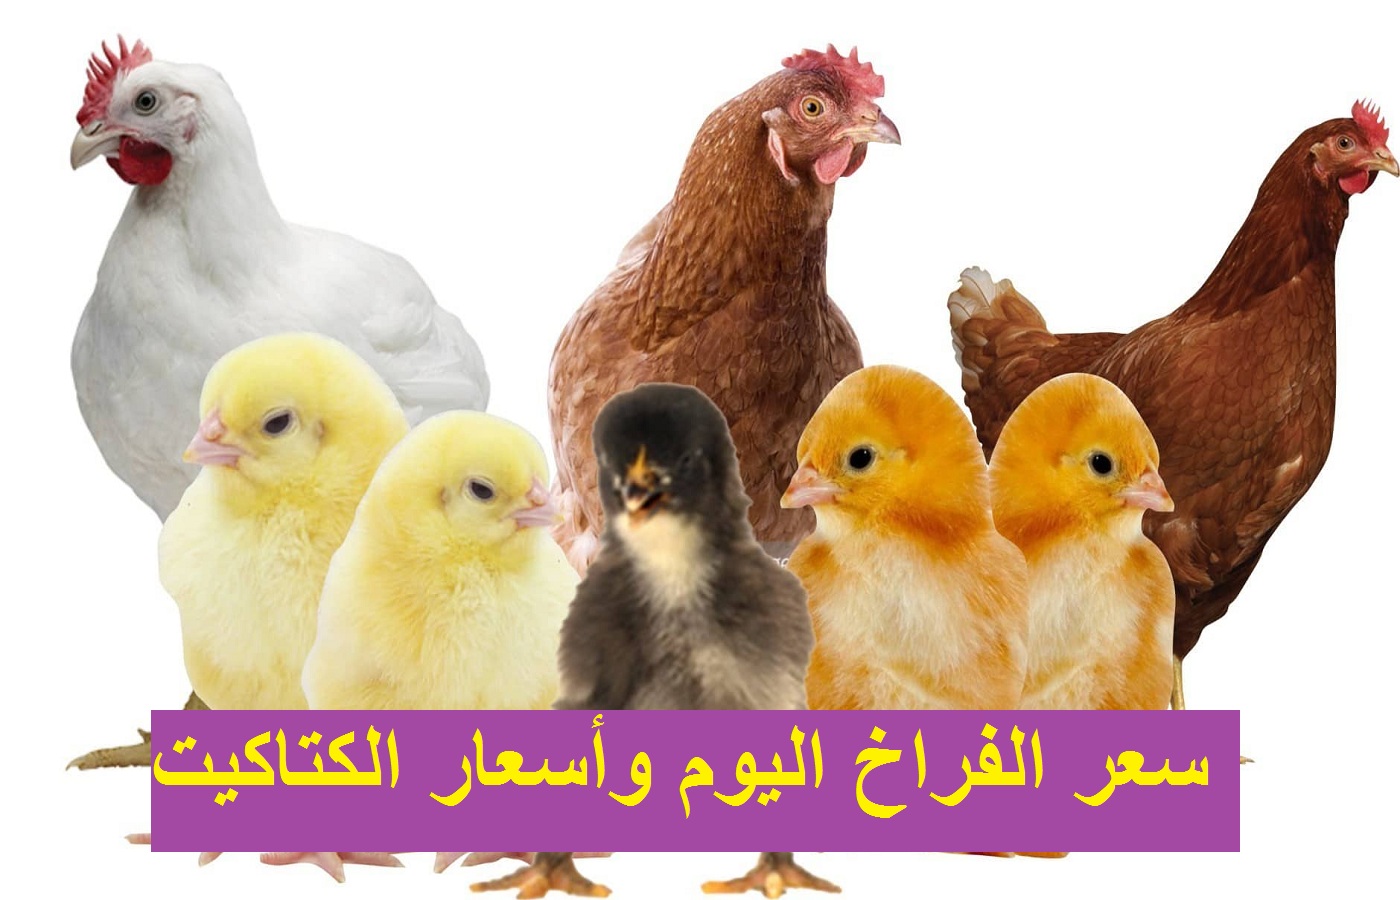 سعر الفراخ اليوم الأربعاء 29 ديسمبر 2021 بعد ارتفاع أسعار البيض 39